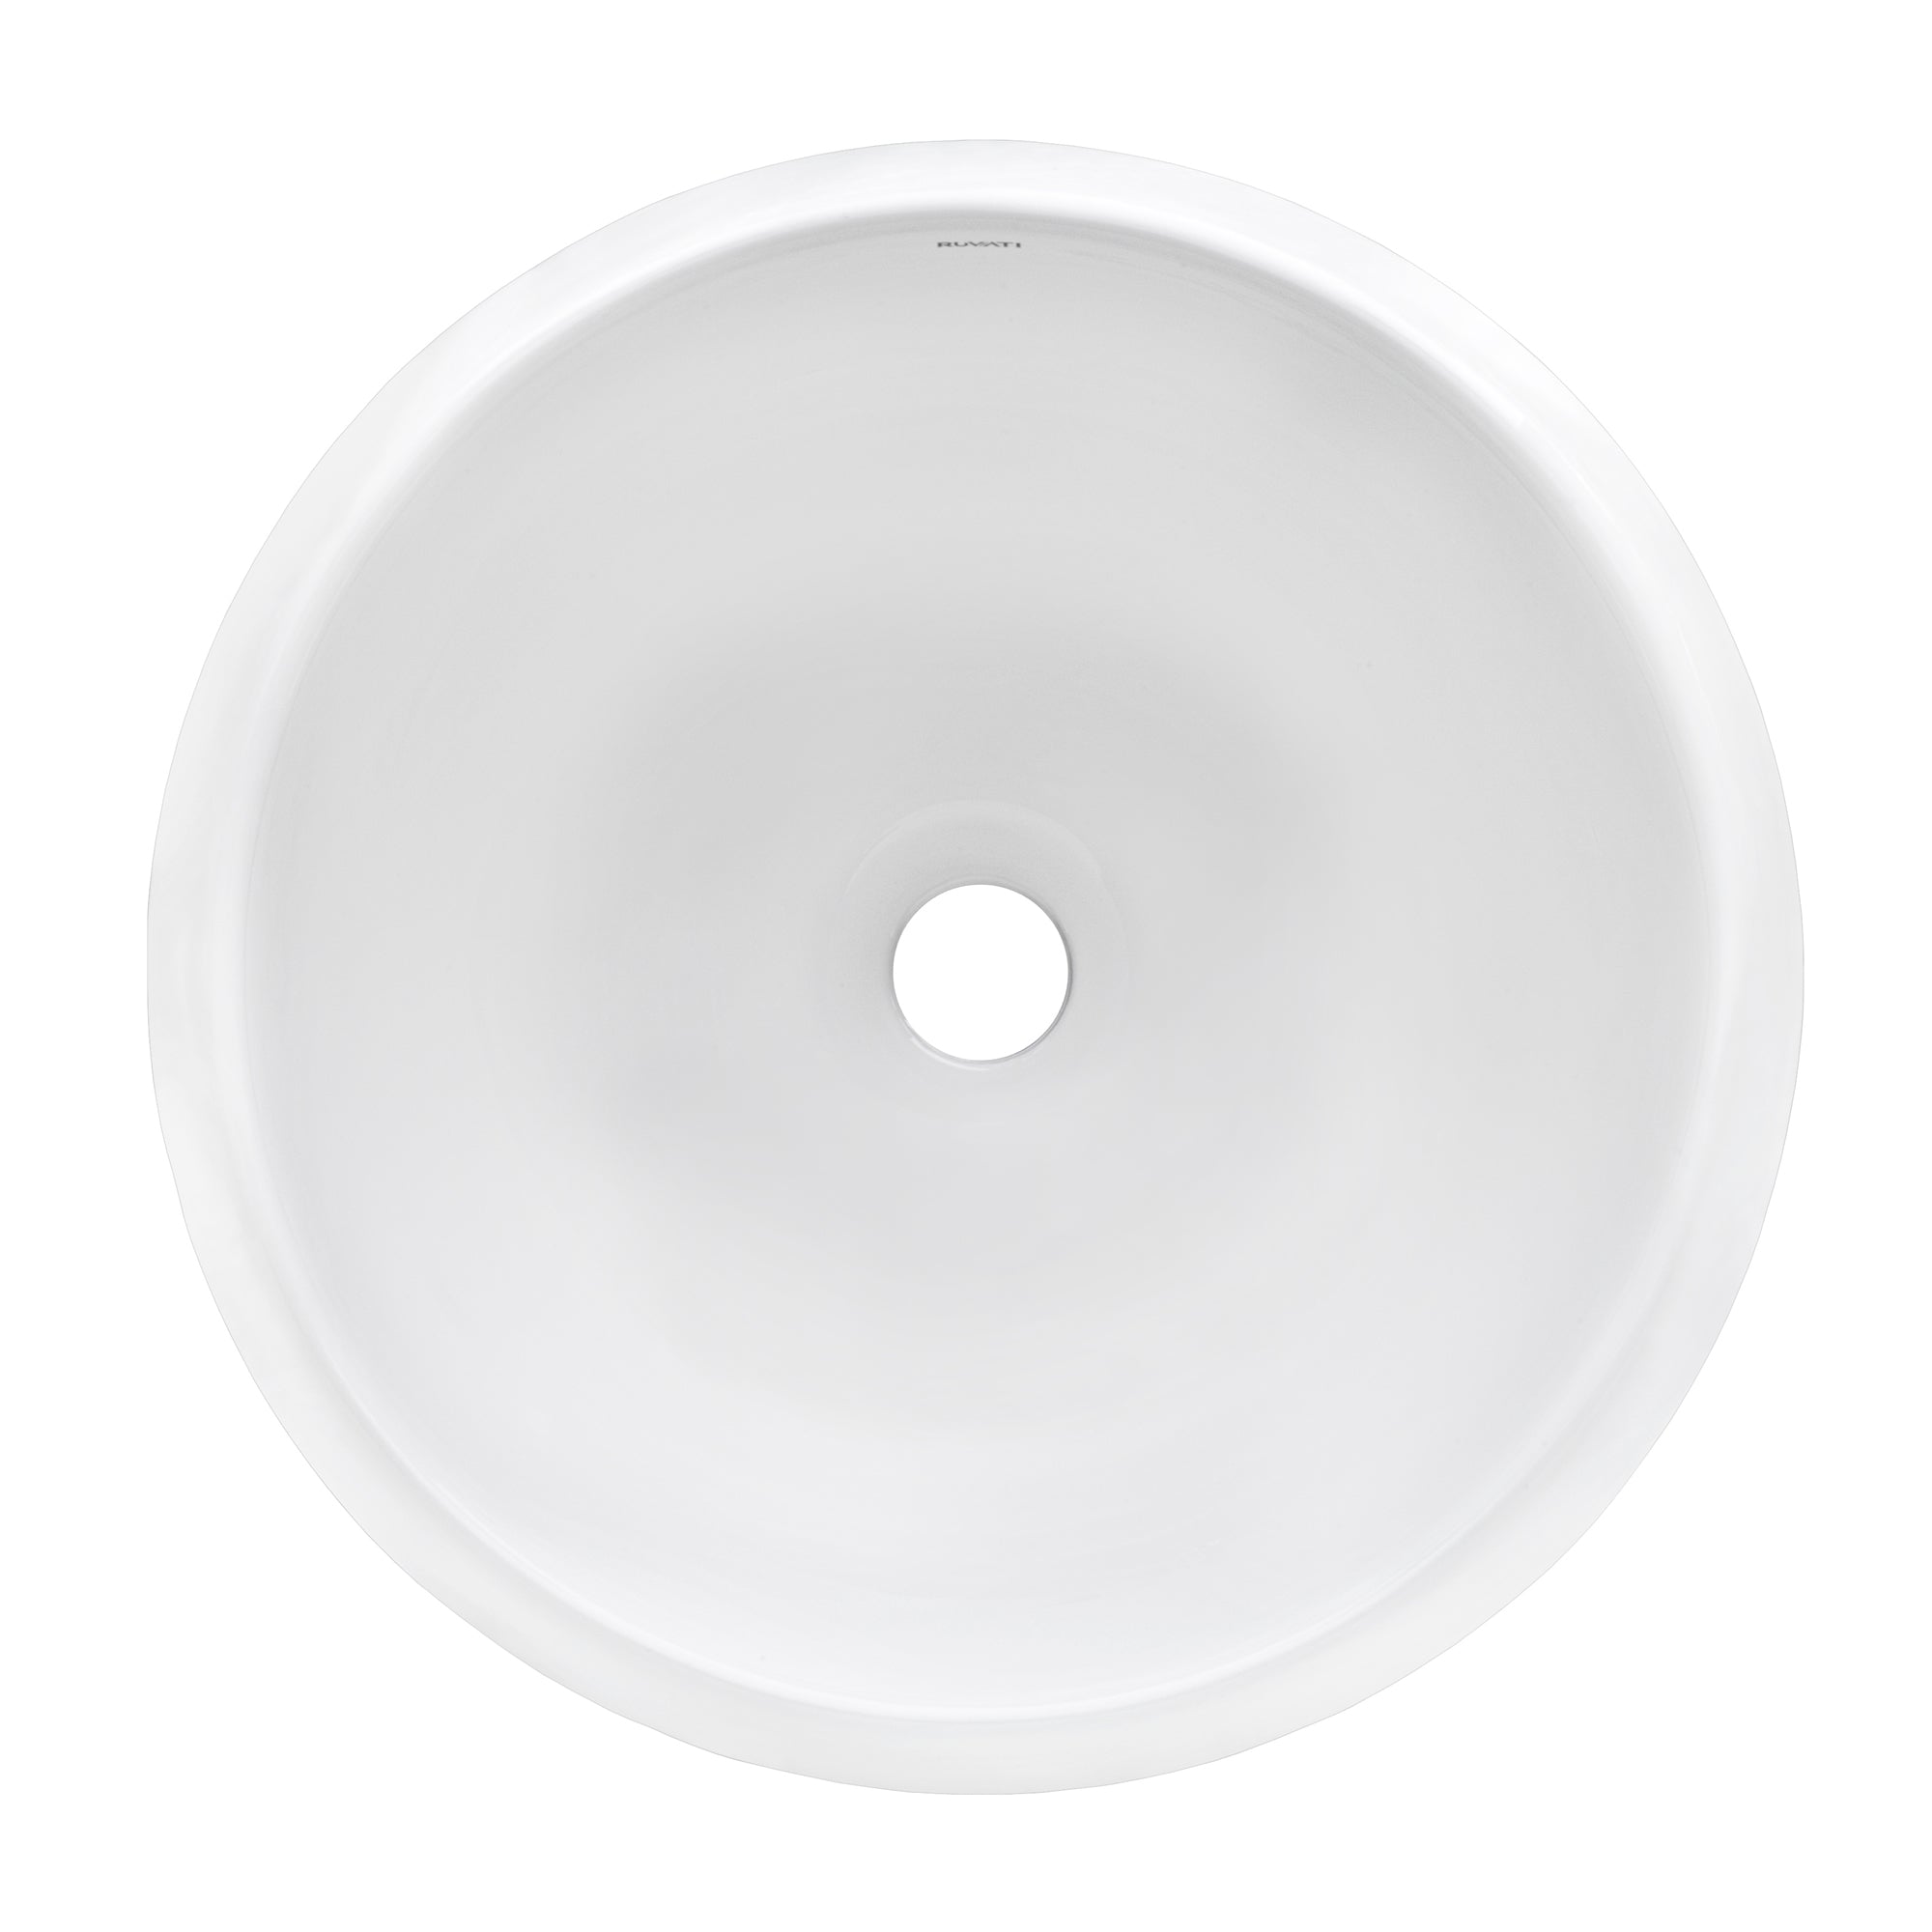 Ruvati 16" Round Bathroom Vessel Sink in White